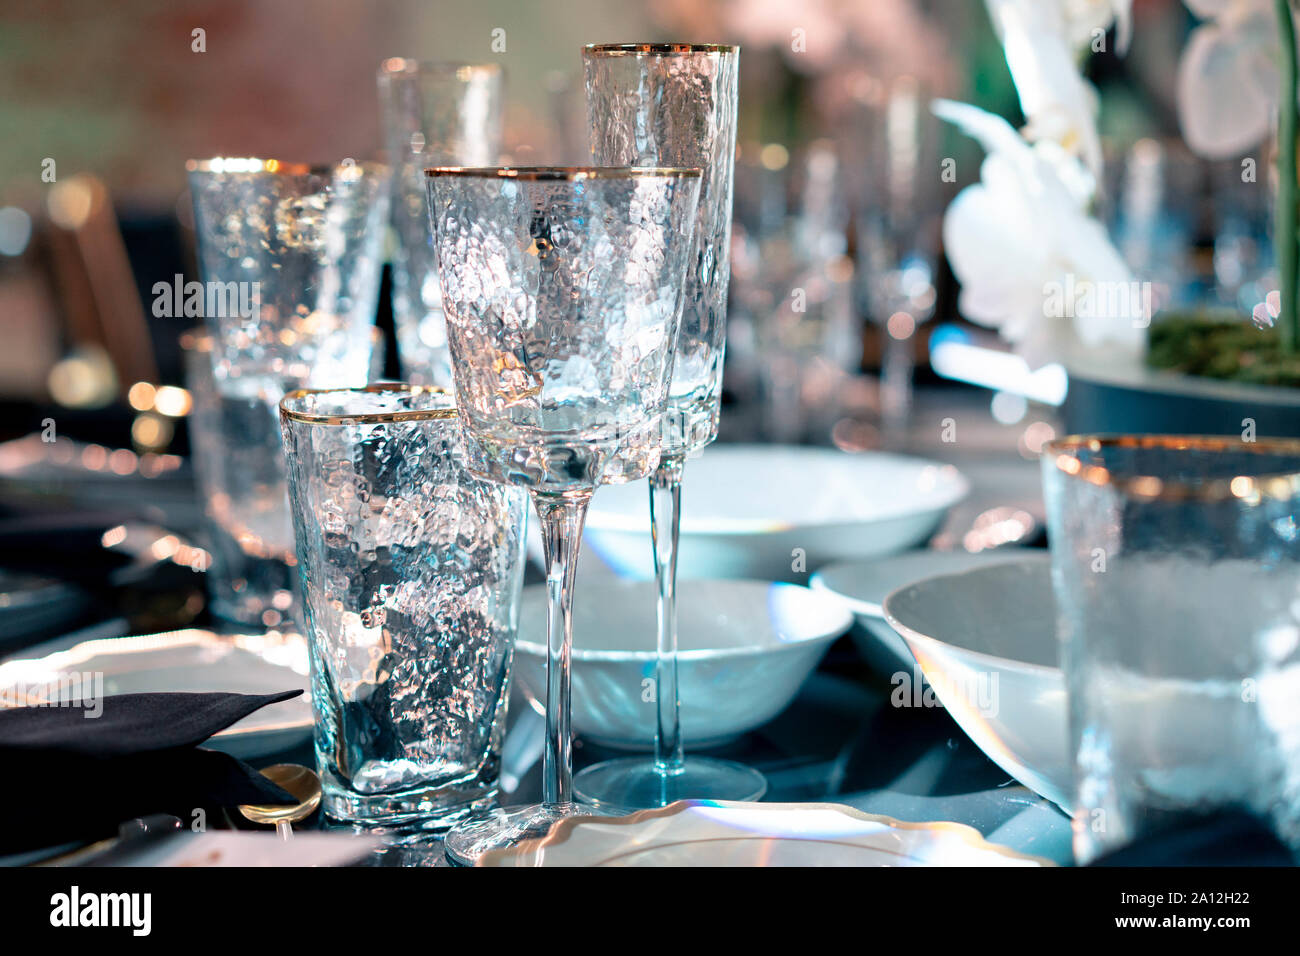 Luxus Catering und Service. Hochzeit oder Jubiläum. Bankett Tisch serviert mit Blumen und Gläser für Wein oder Champagner. Stockfoto